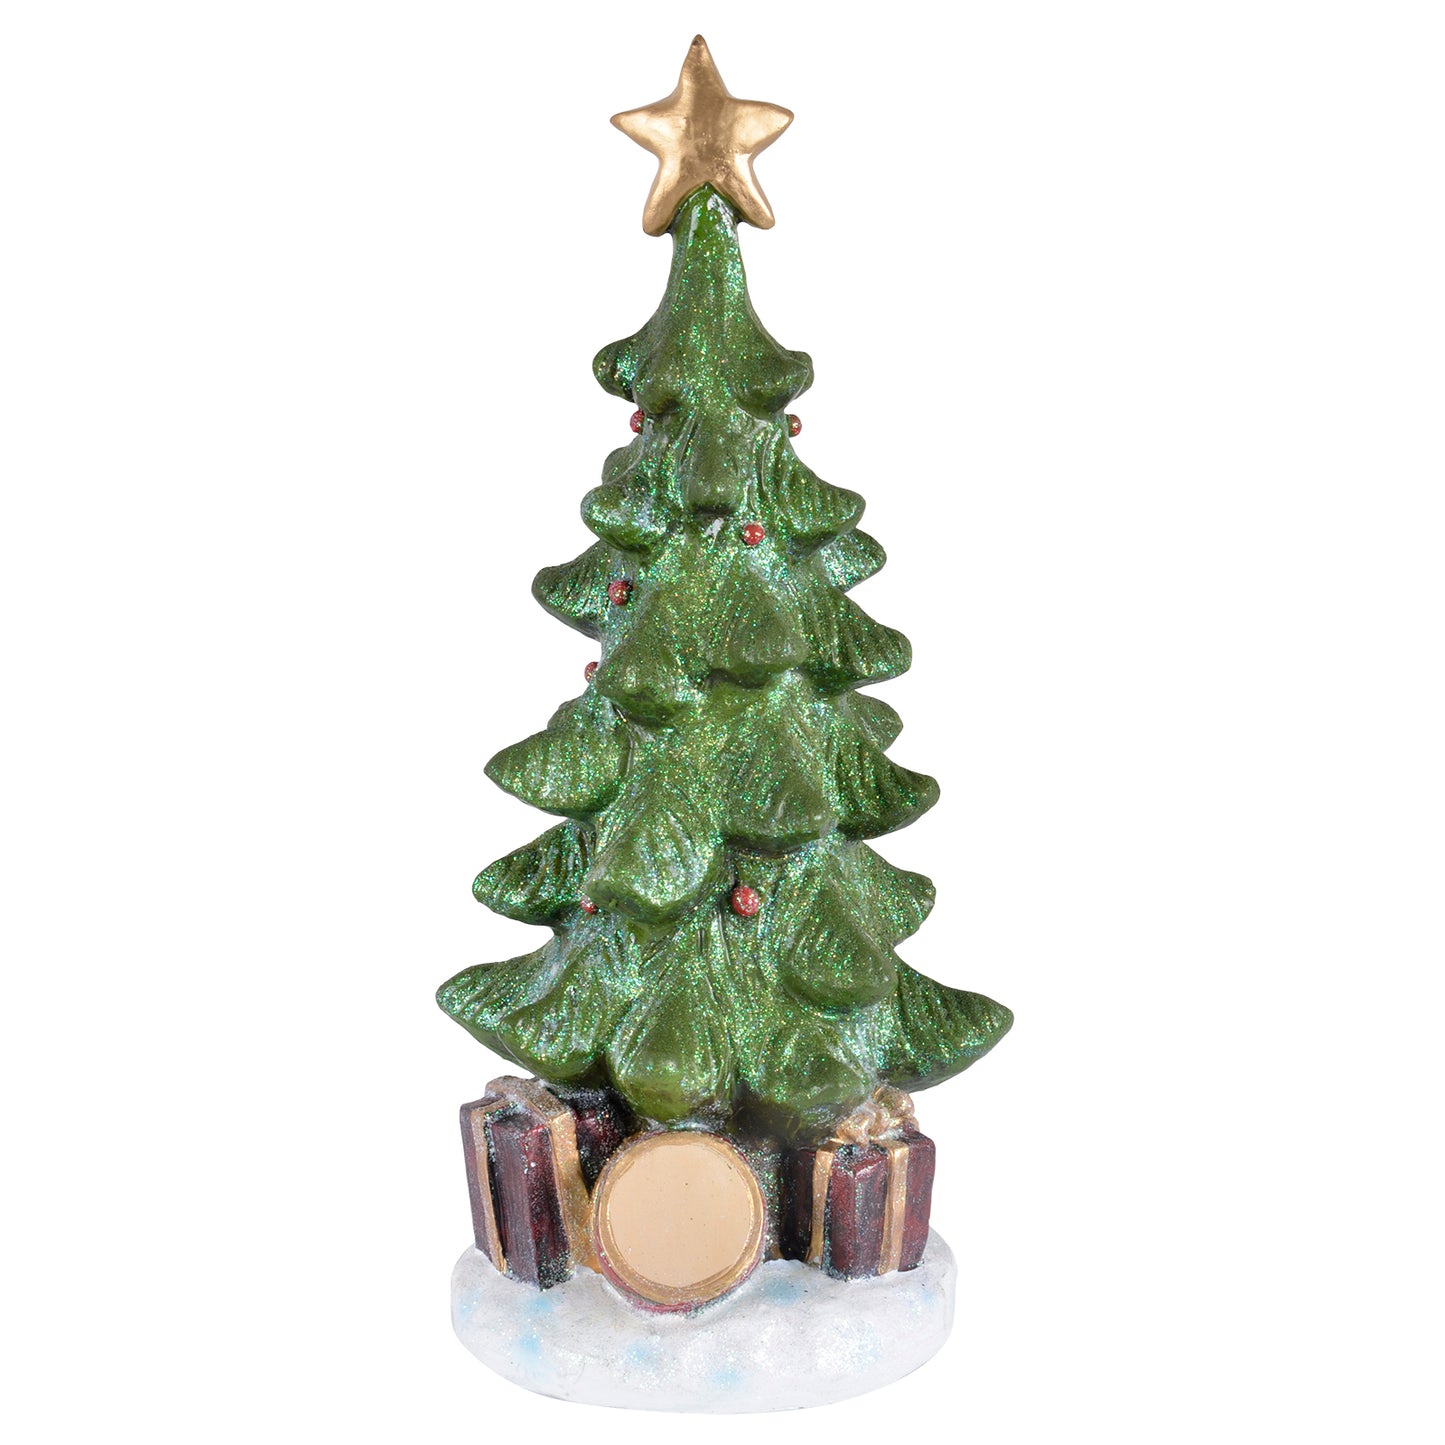 Mr Crimbo Christmas Tree Resin Ornament Glitter Base - MrCrimbo.co.uk -XS4304 - 37cm -christmas decor